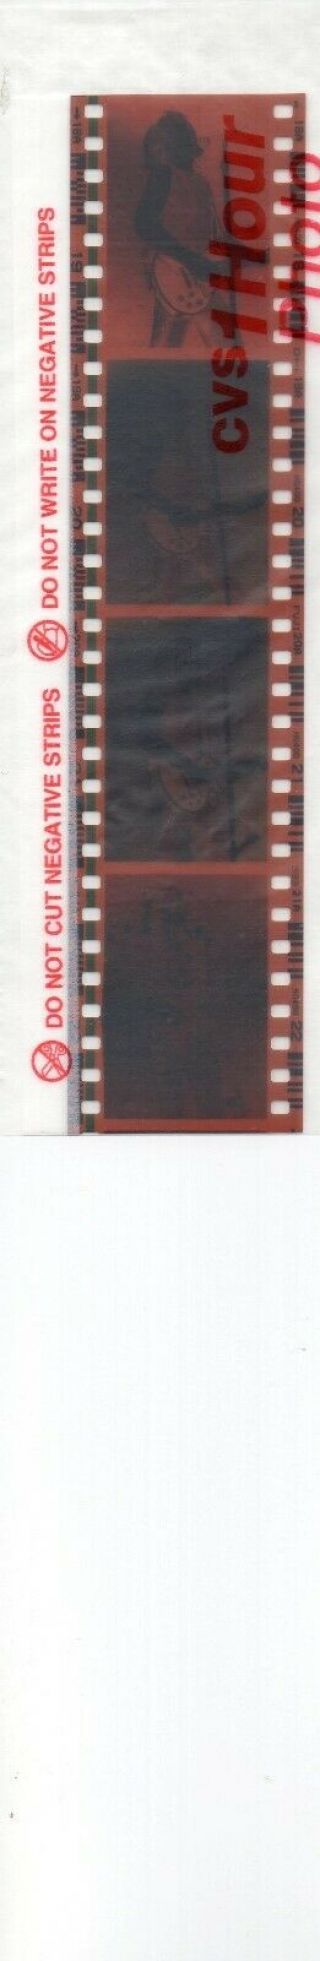 Bon Jovi Color 35mm Negatives Set A11